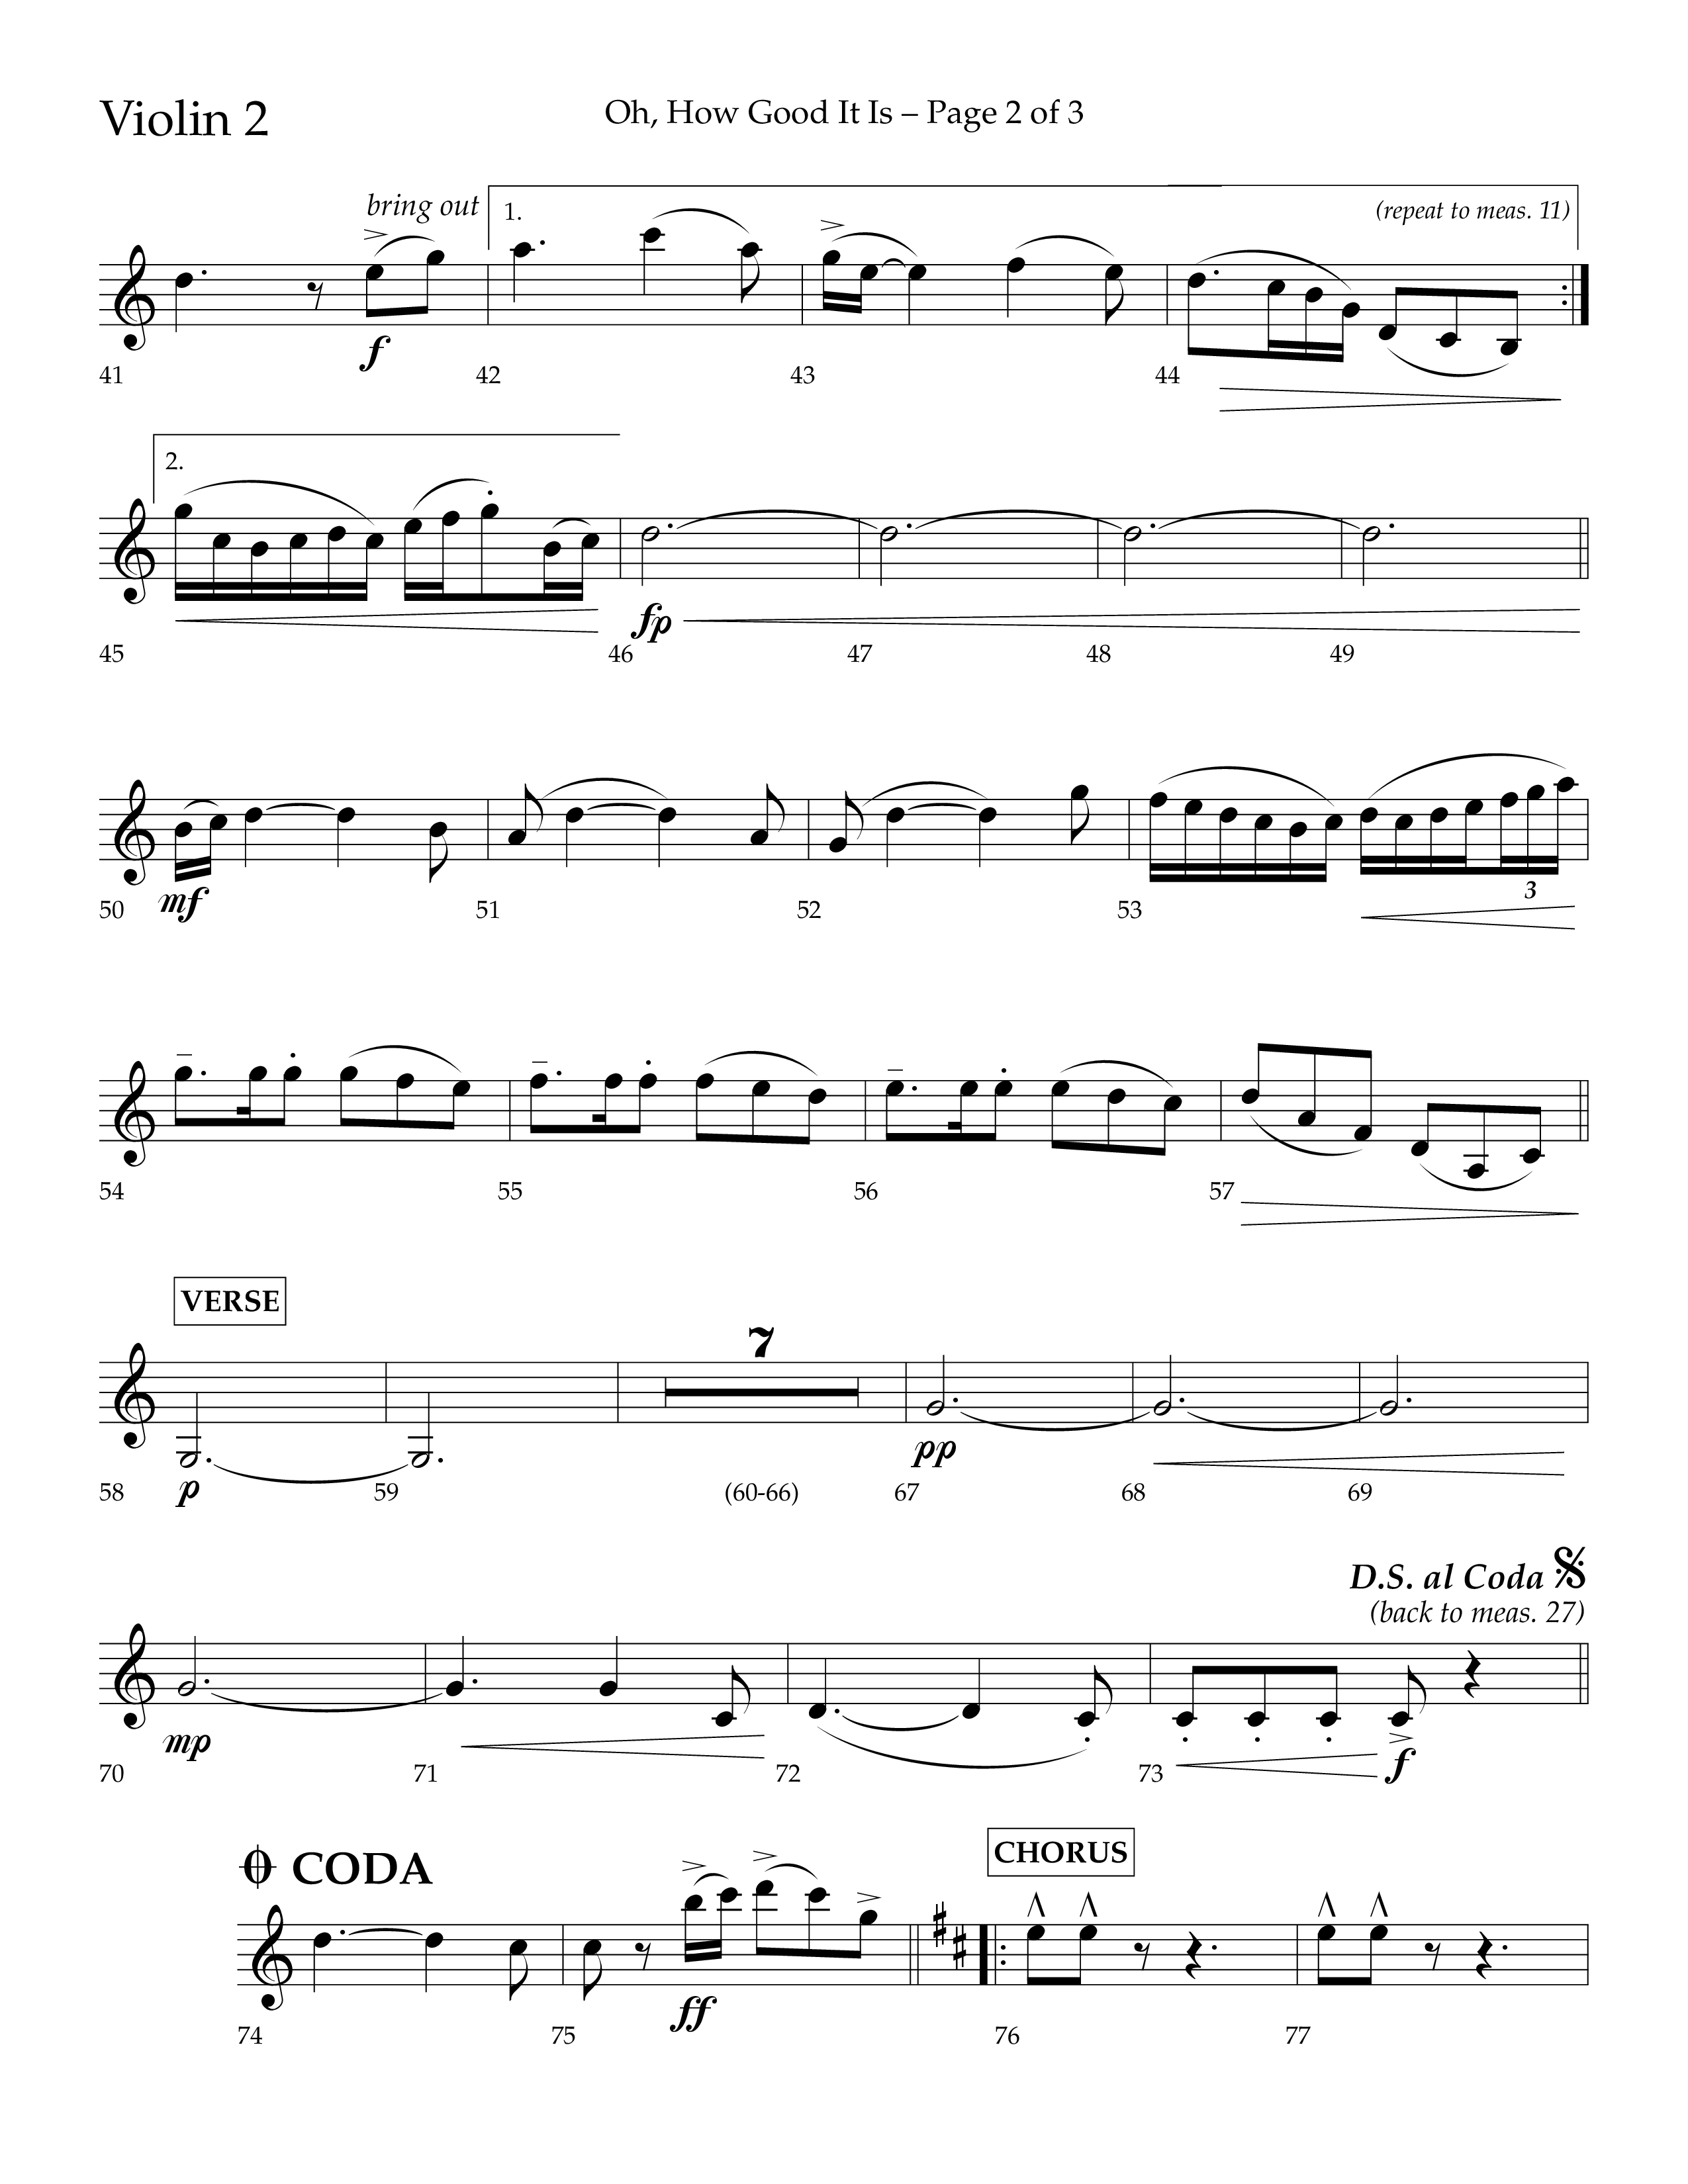 Oh How Good It Is (Choral Anthem SATB) Violin 2 (Lifeway Choral / Arr. David Hamilton)